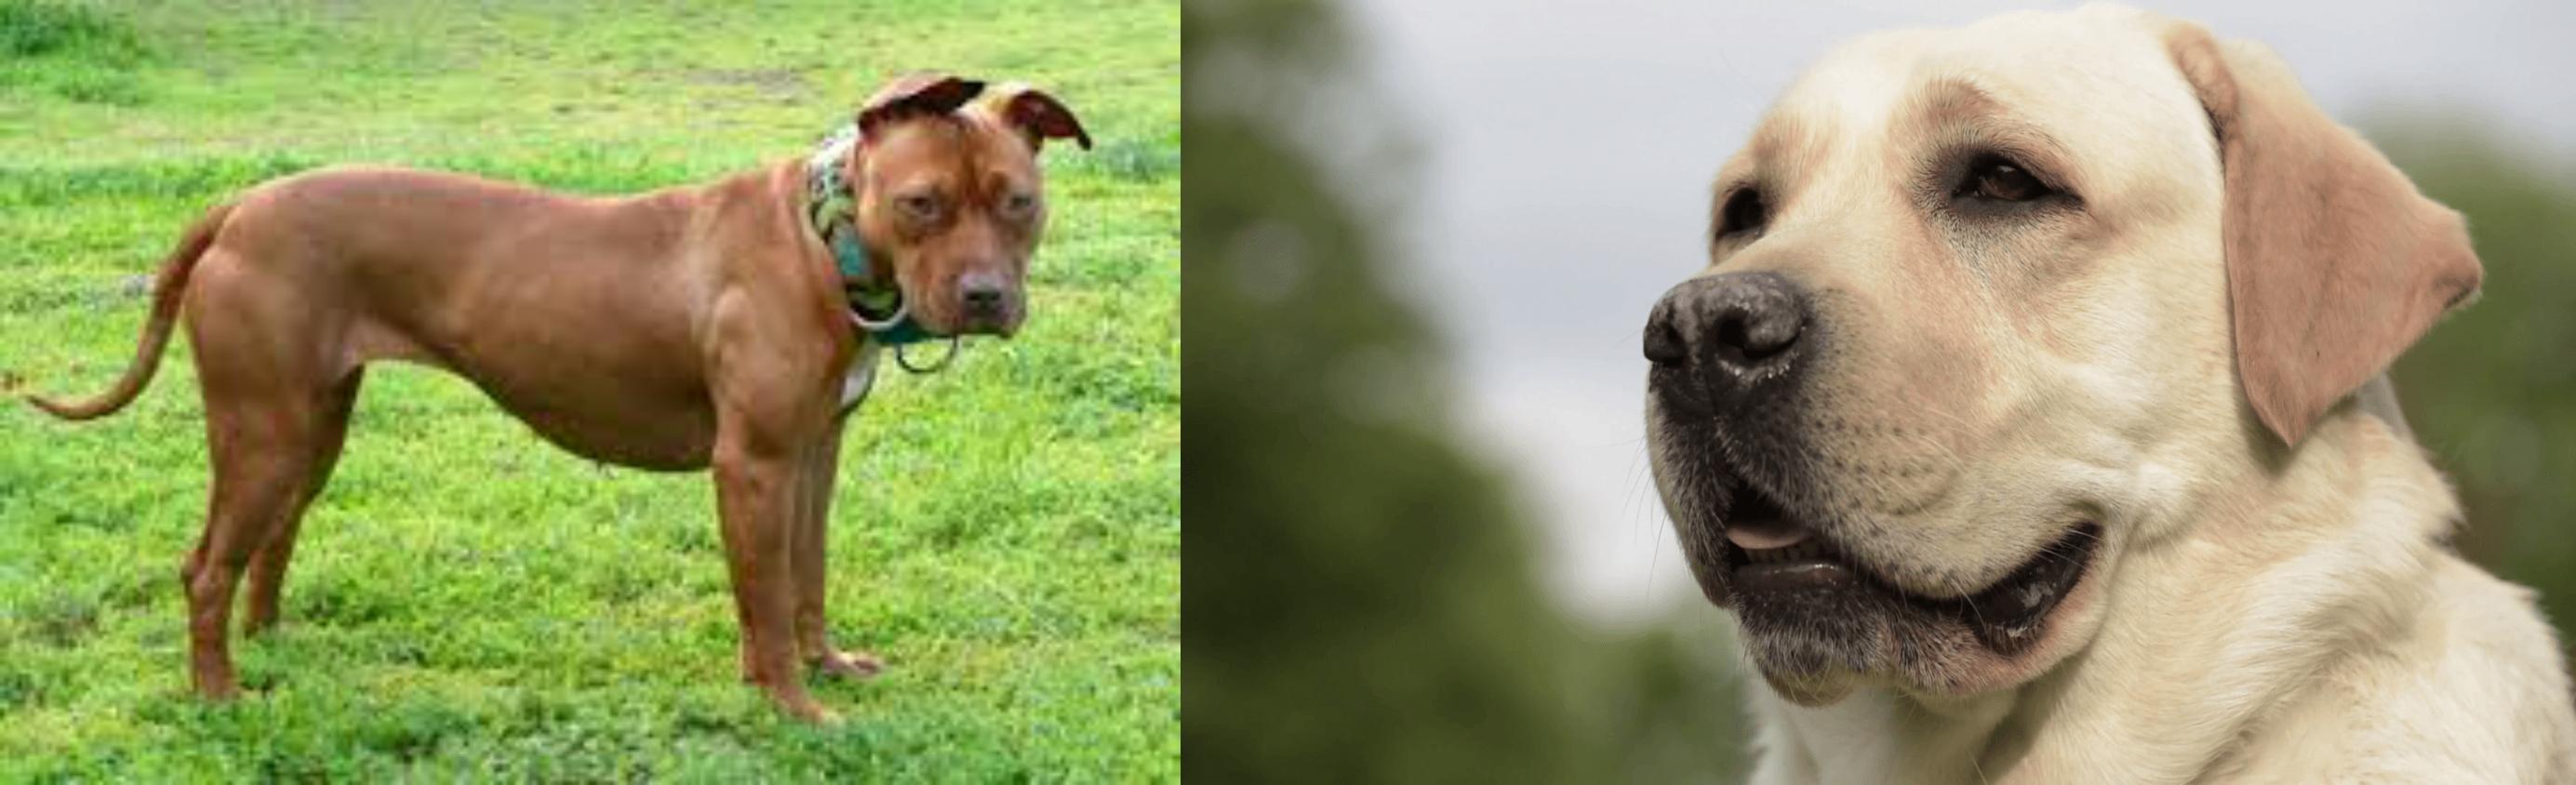 American Pit Bull Terrier Vs Labrador Retriever Breed Comparison